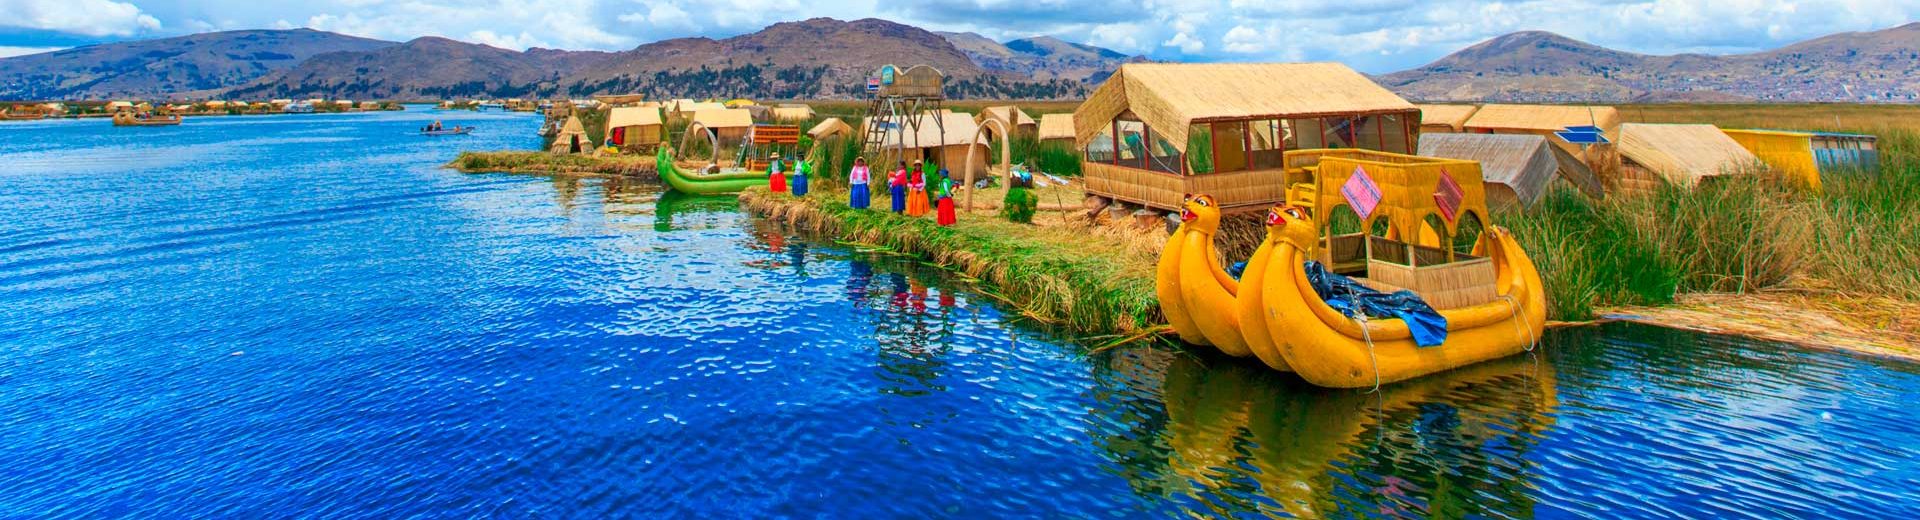 destino lago titicaca